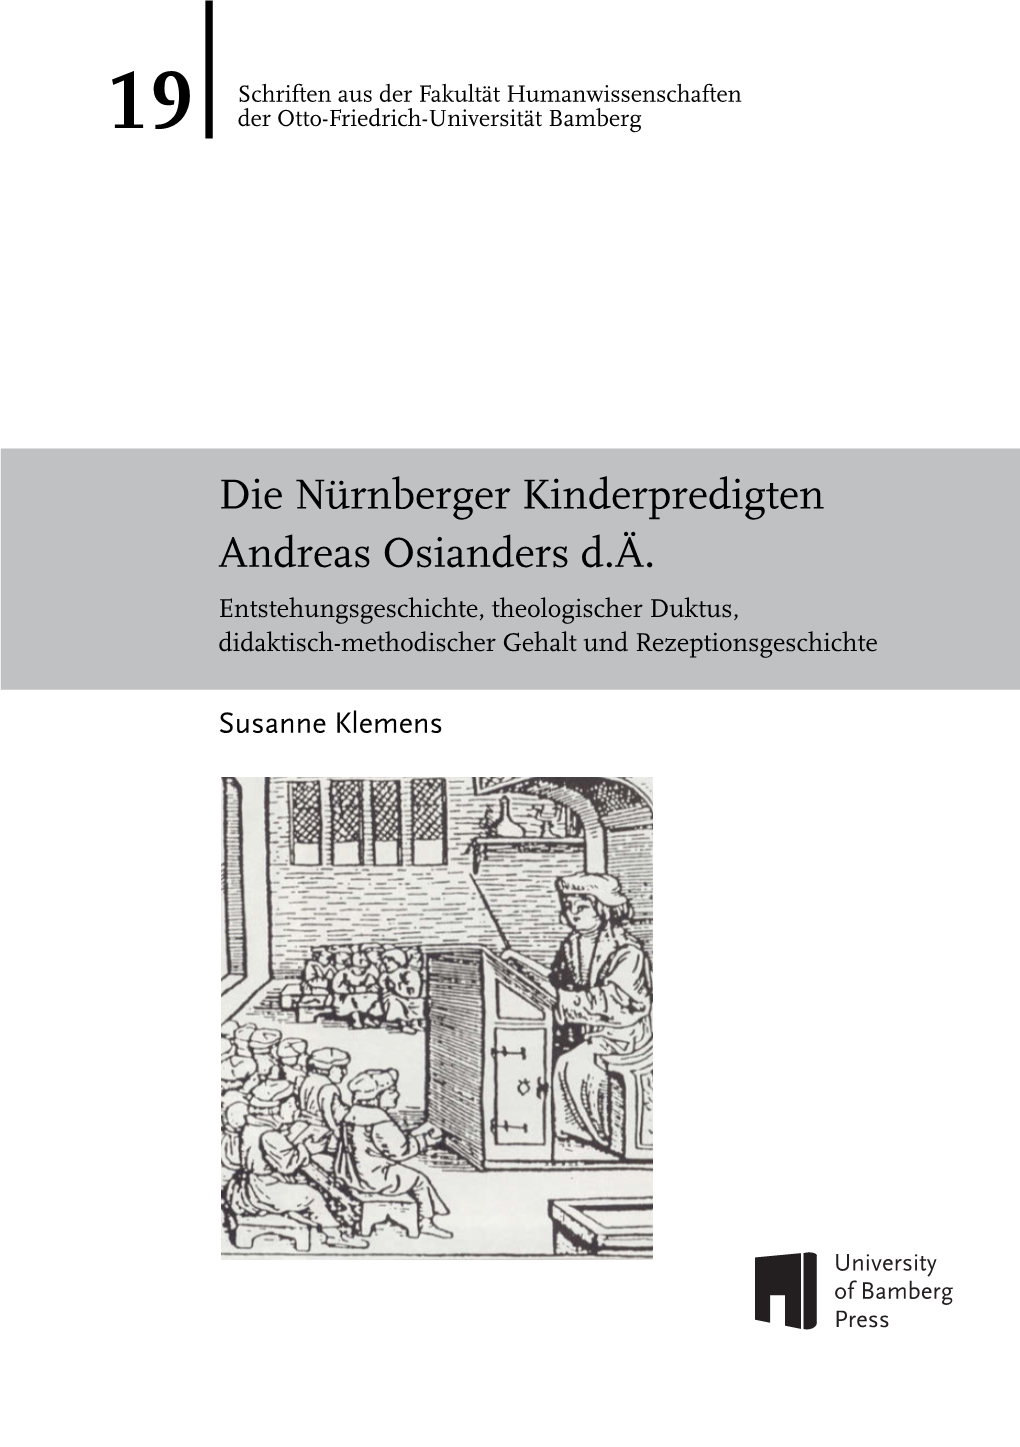 Die Nürnberger Kinderpredigten Andreas Osianders D.Ä